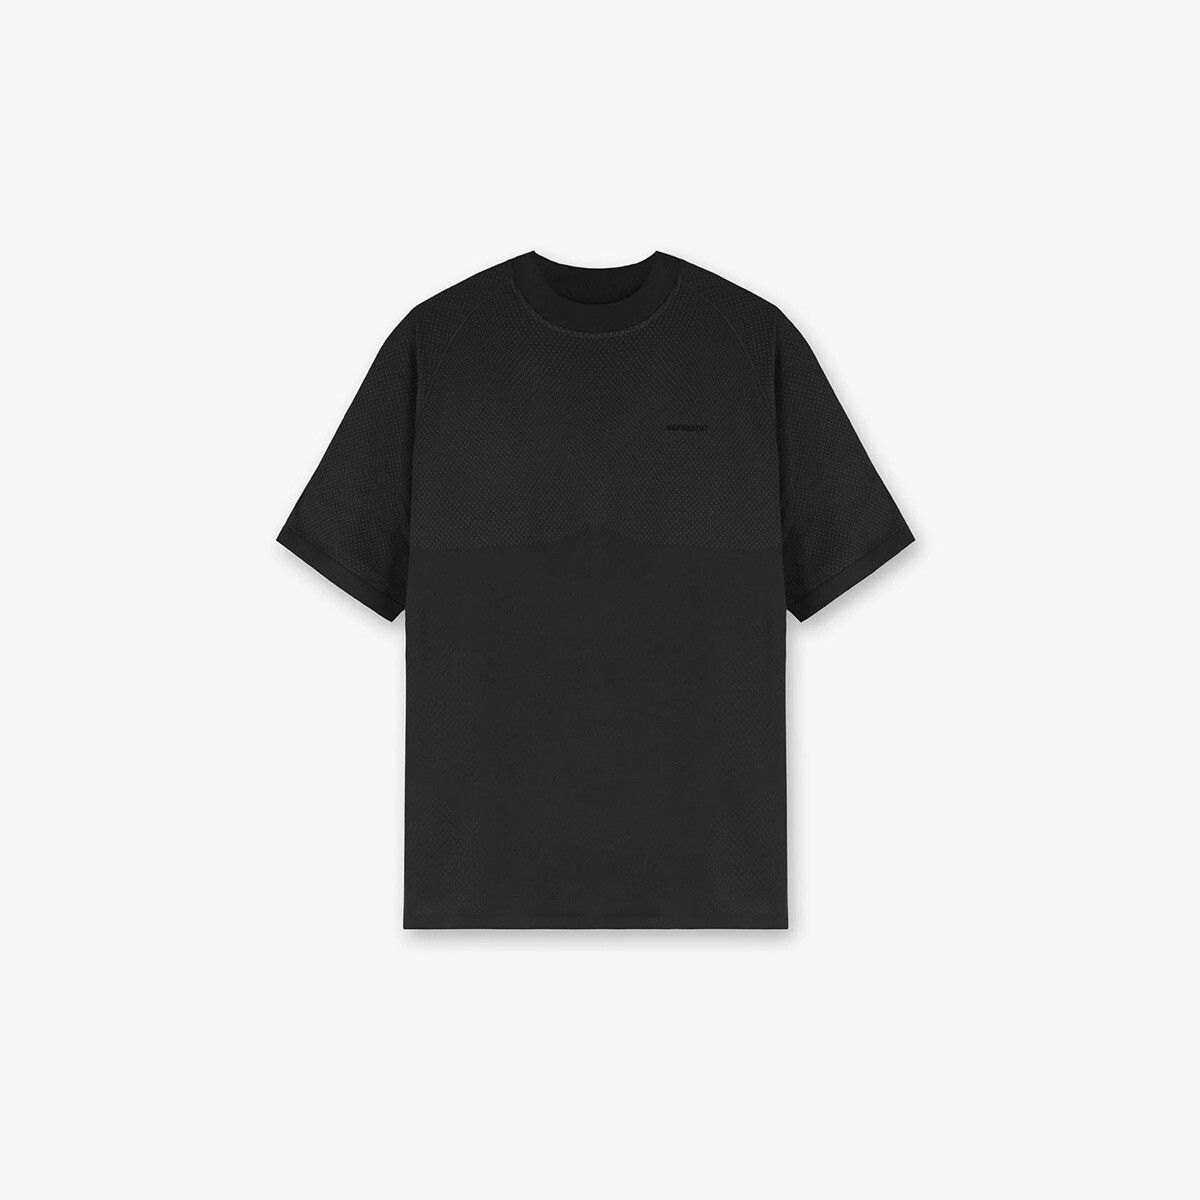 Represent Clo. Represent 247 seamless shirt bundle Size US L / EU 52-54 / 3 - 1 Preview